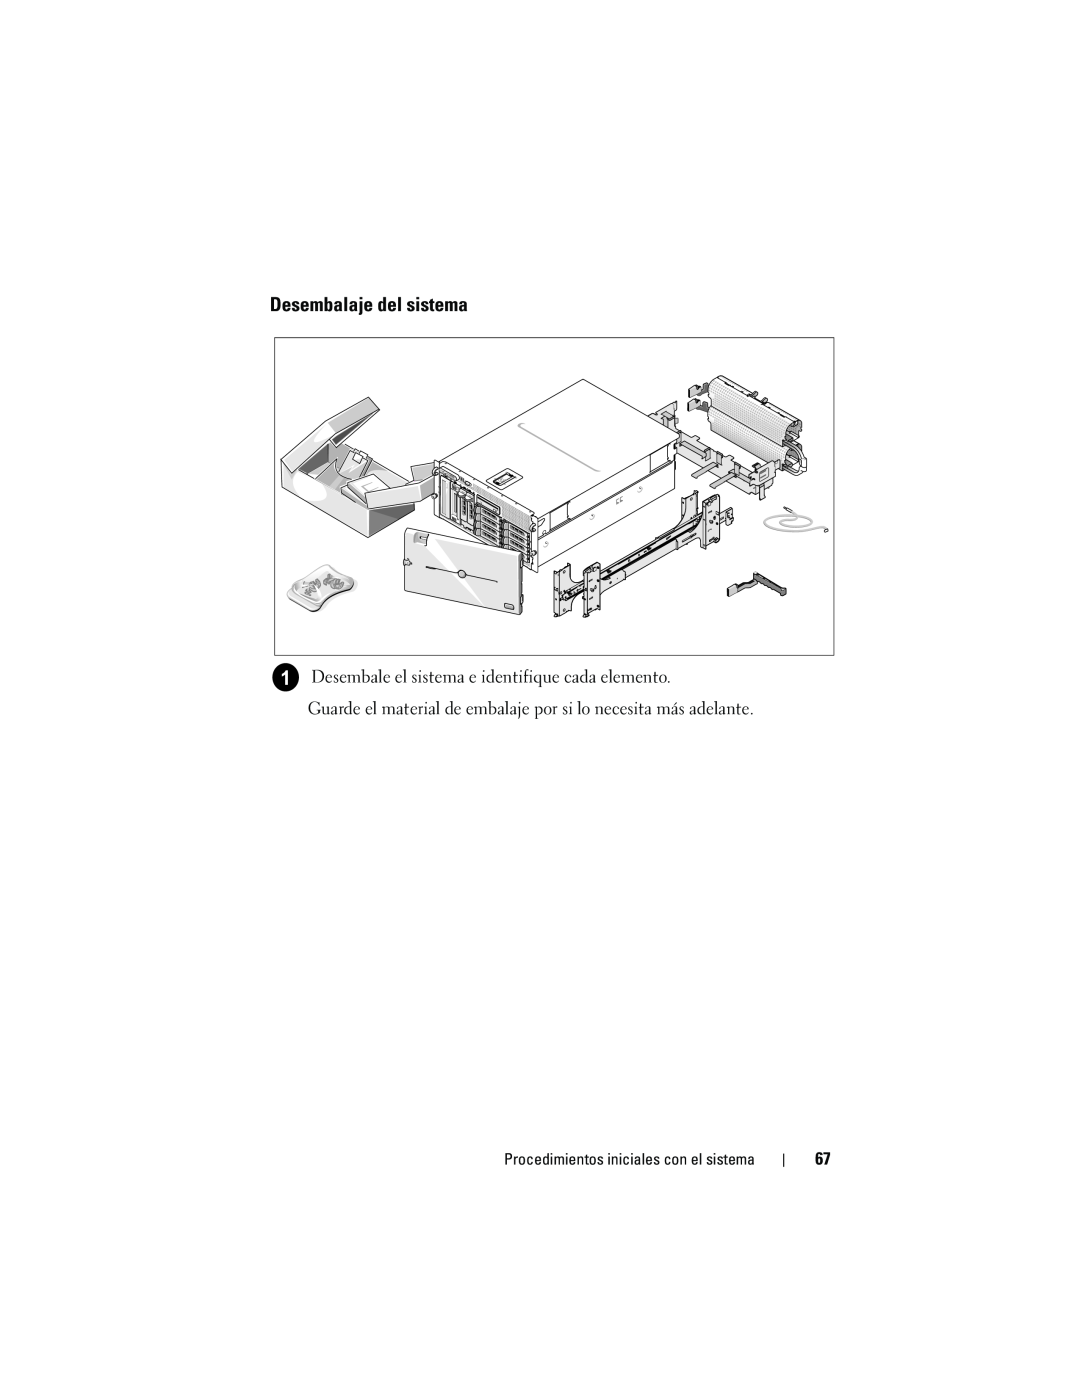 Dell CX193 manual Desembalaje del sistema, Desembale el sistema e identifique cada elemento 